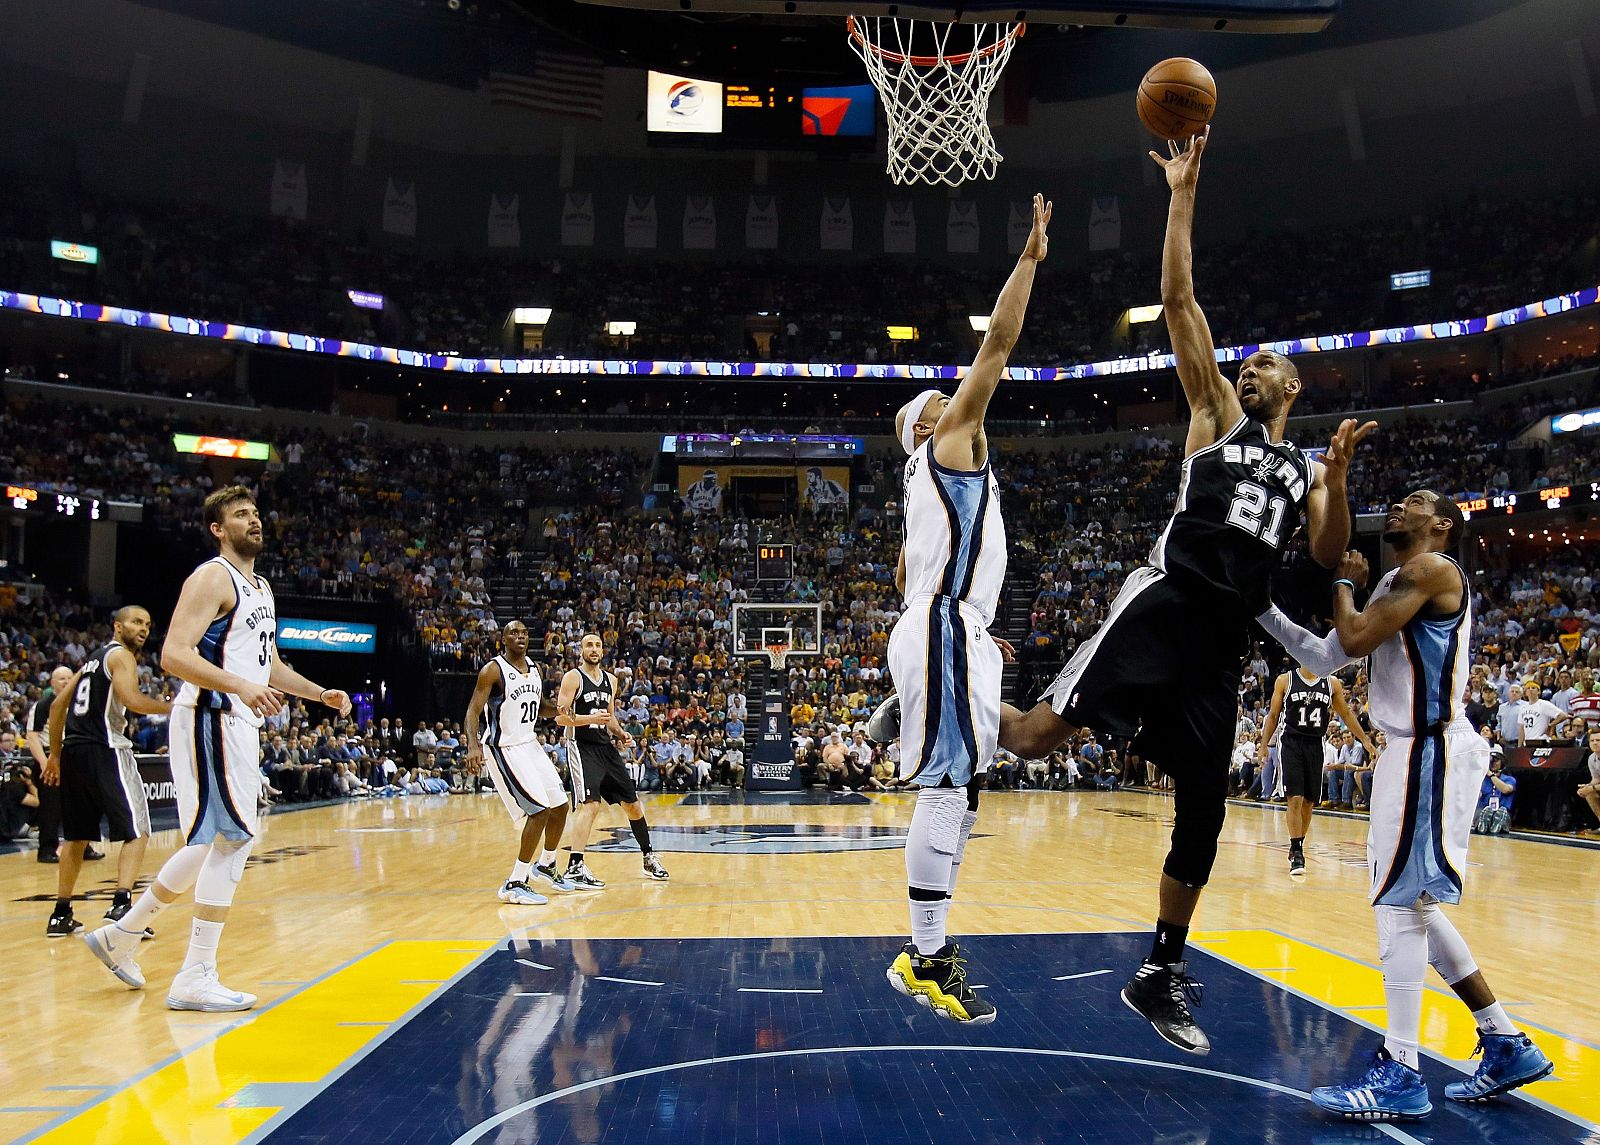 Tim Duncan, de los Spurs, tira a canasta ante la oposición de dos jugadores de los Grizzliez y Marc Gasol de fondo